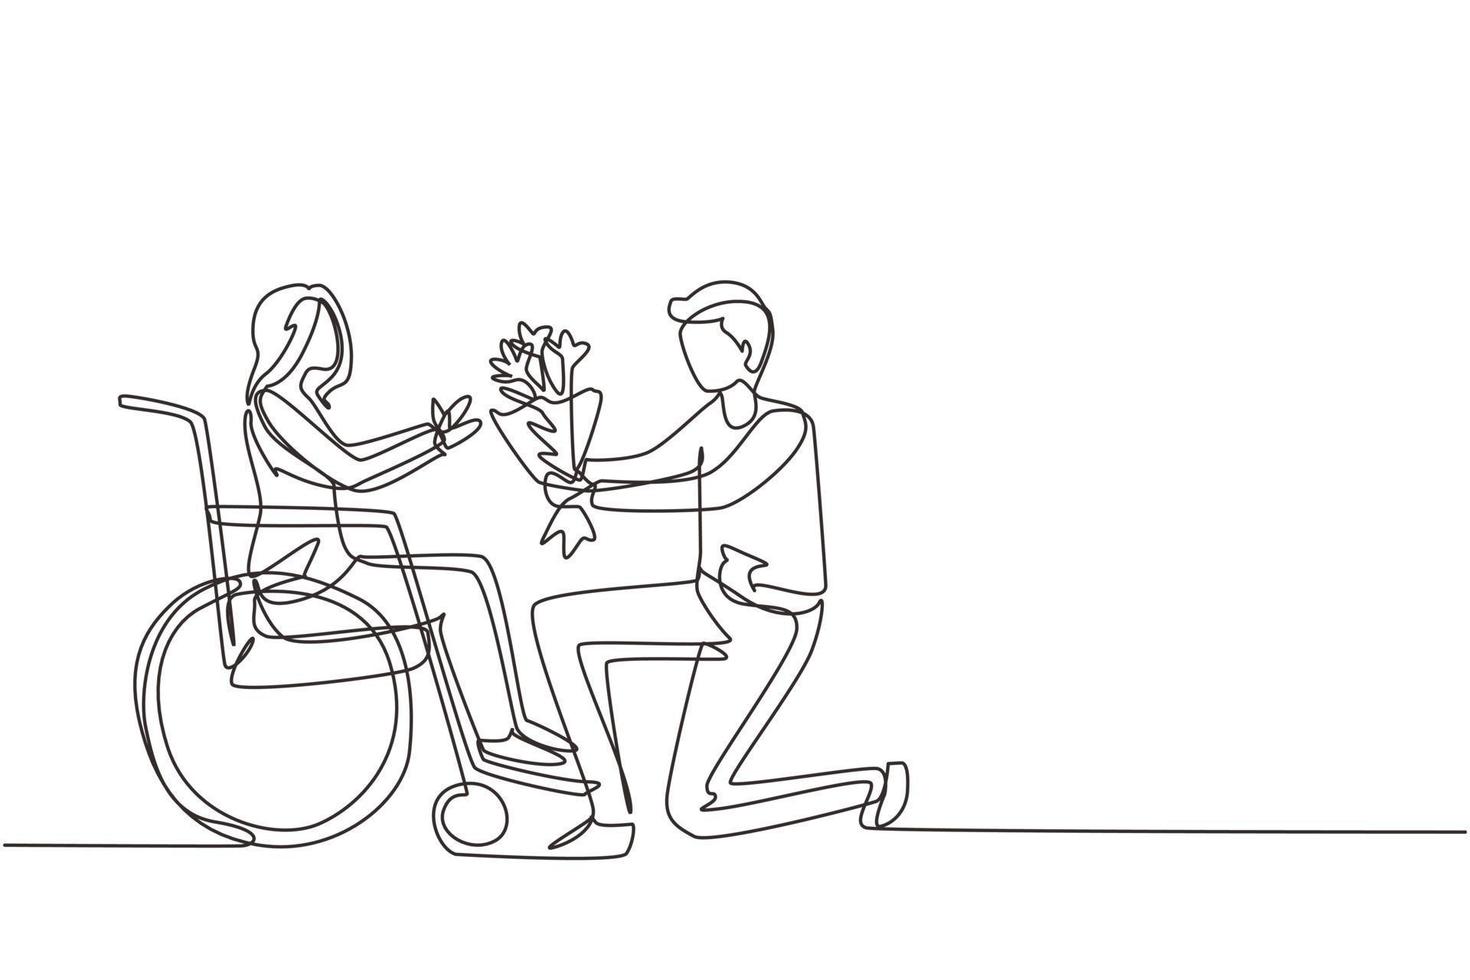 disegno a linea continua singolo maschio e femmina disabile in sedia a rotelle. l'uomo dà un mazzo di fiori alla donna. badante, sostegno morale familiare. riabilitazione della disabilità. vettore di disegno di una linea